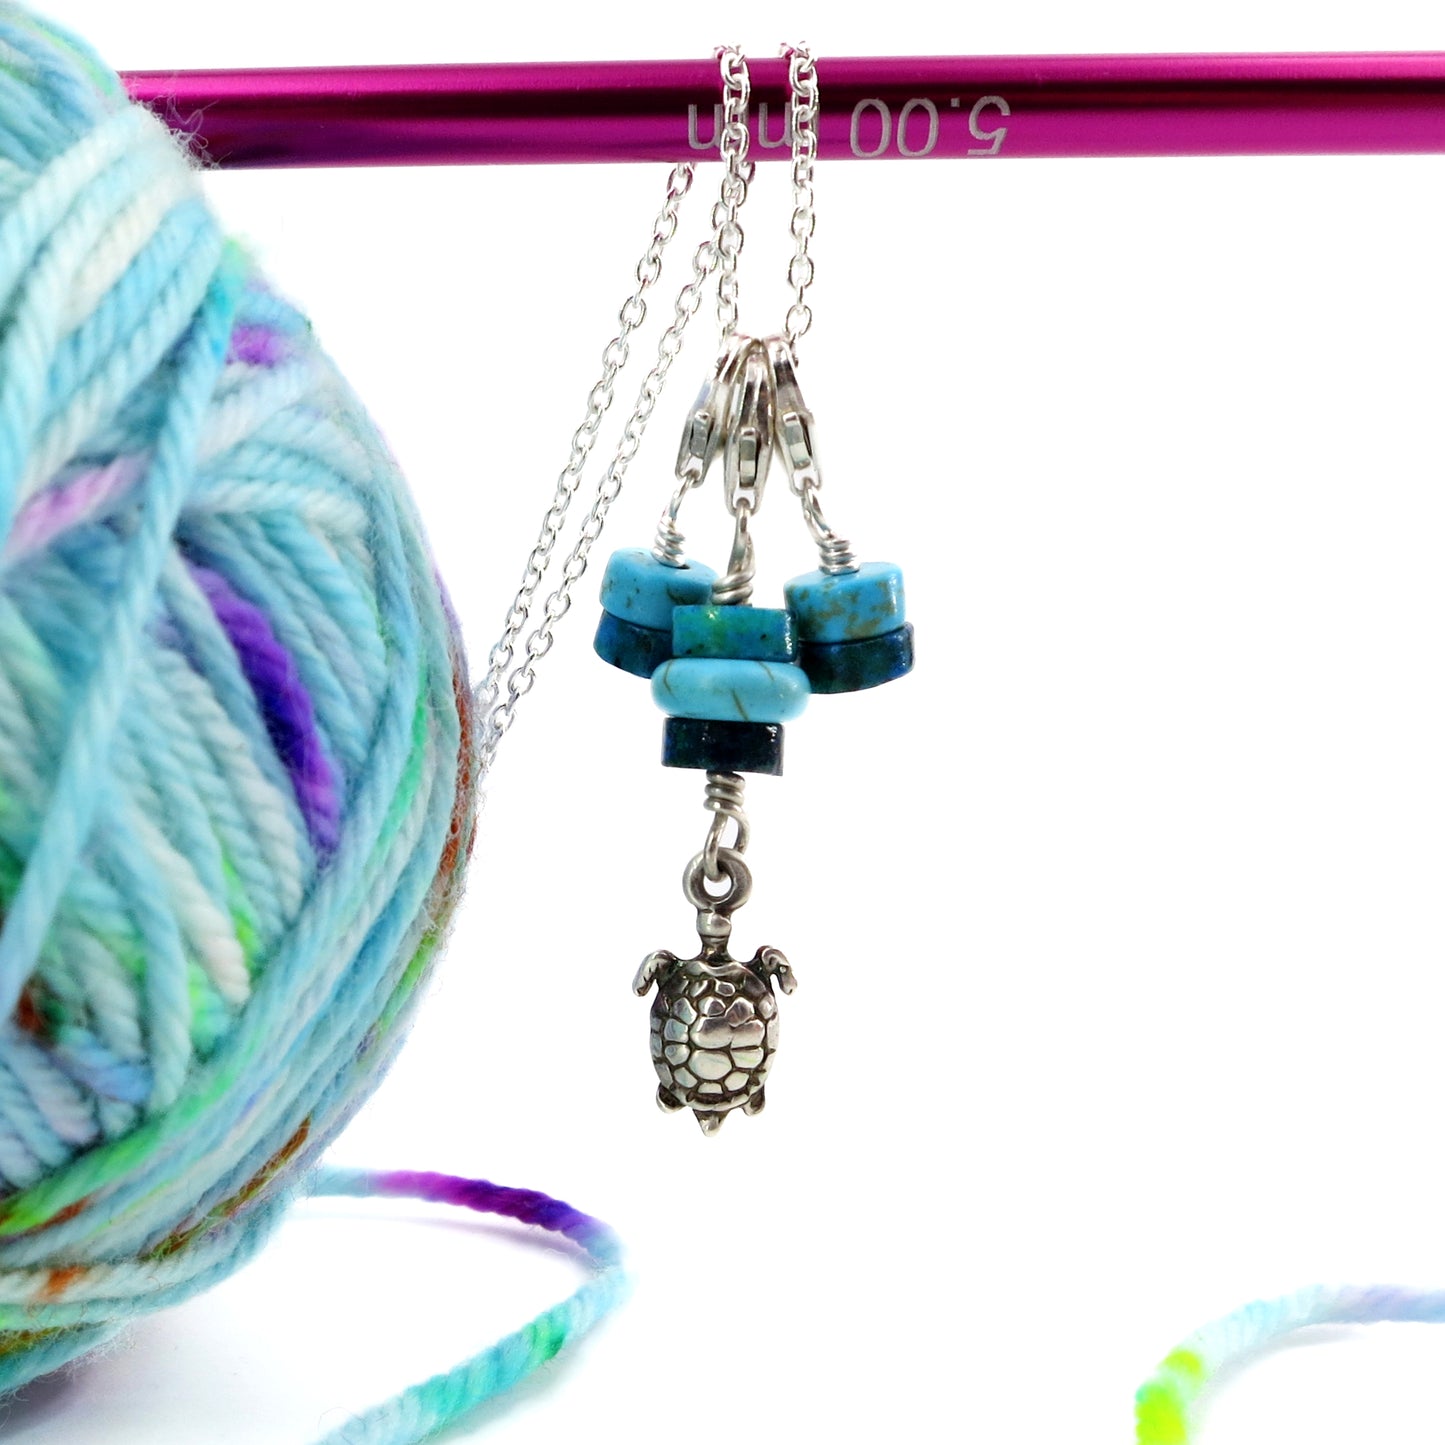 Marqueur de maille pour tricot / crochet - Tortue